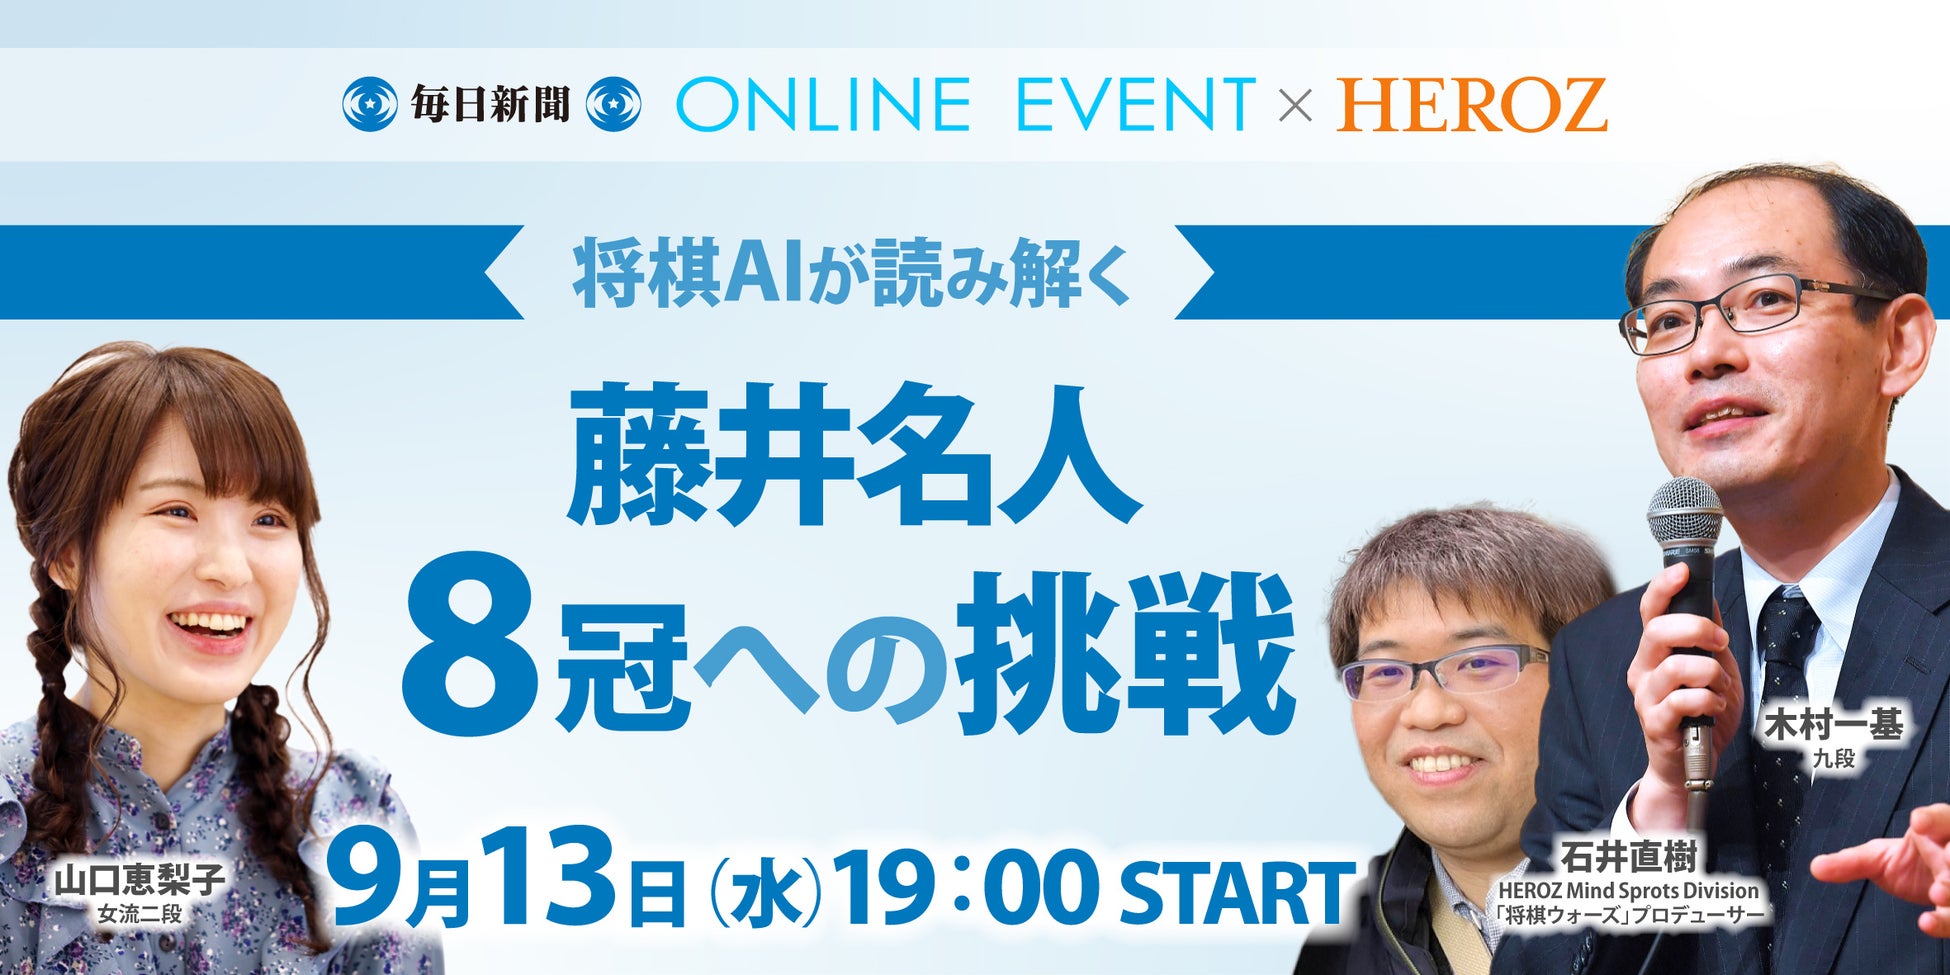 徳光和夫氏が横浜市で肝炎対策を呼びかけ「肝炎ウイルスに感染していないという“安心”は検査によって成り立ちます。」